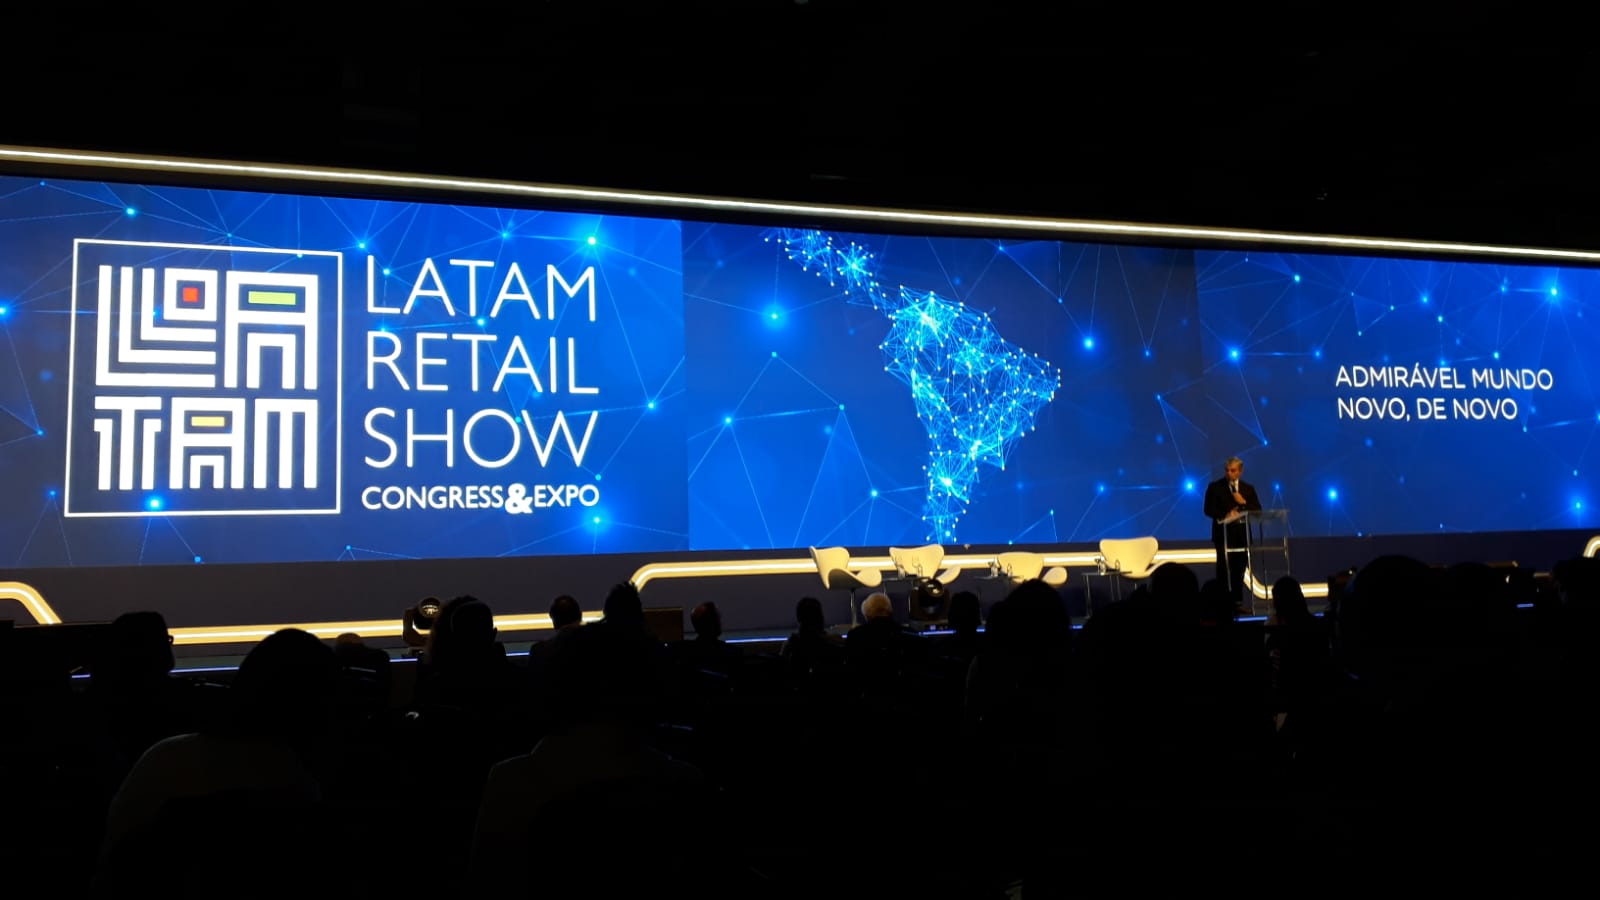 7ª edição do Latam Retail Show é realizada em São Paulo PR